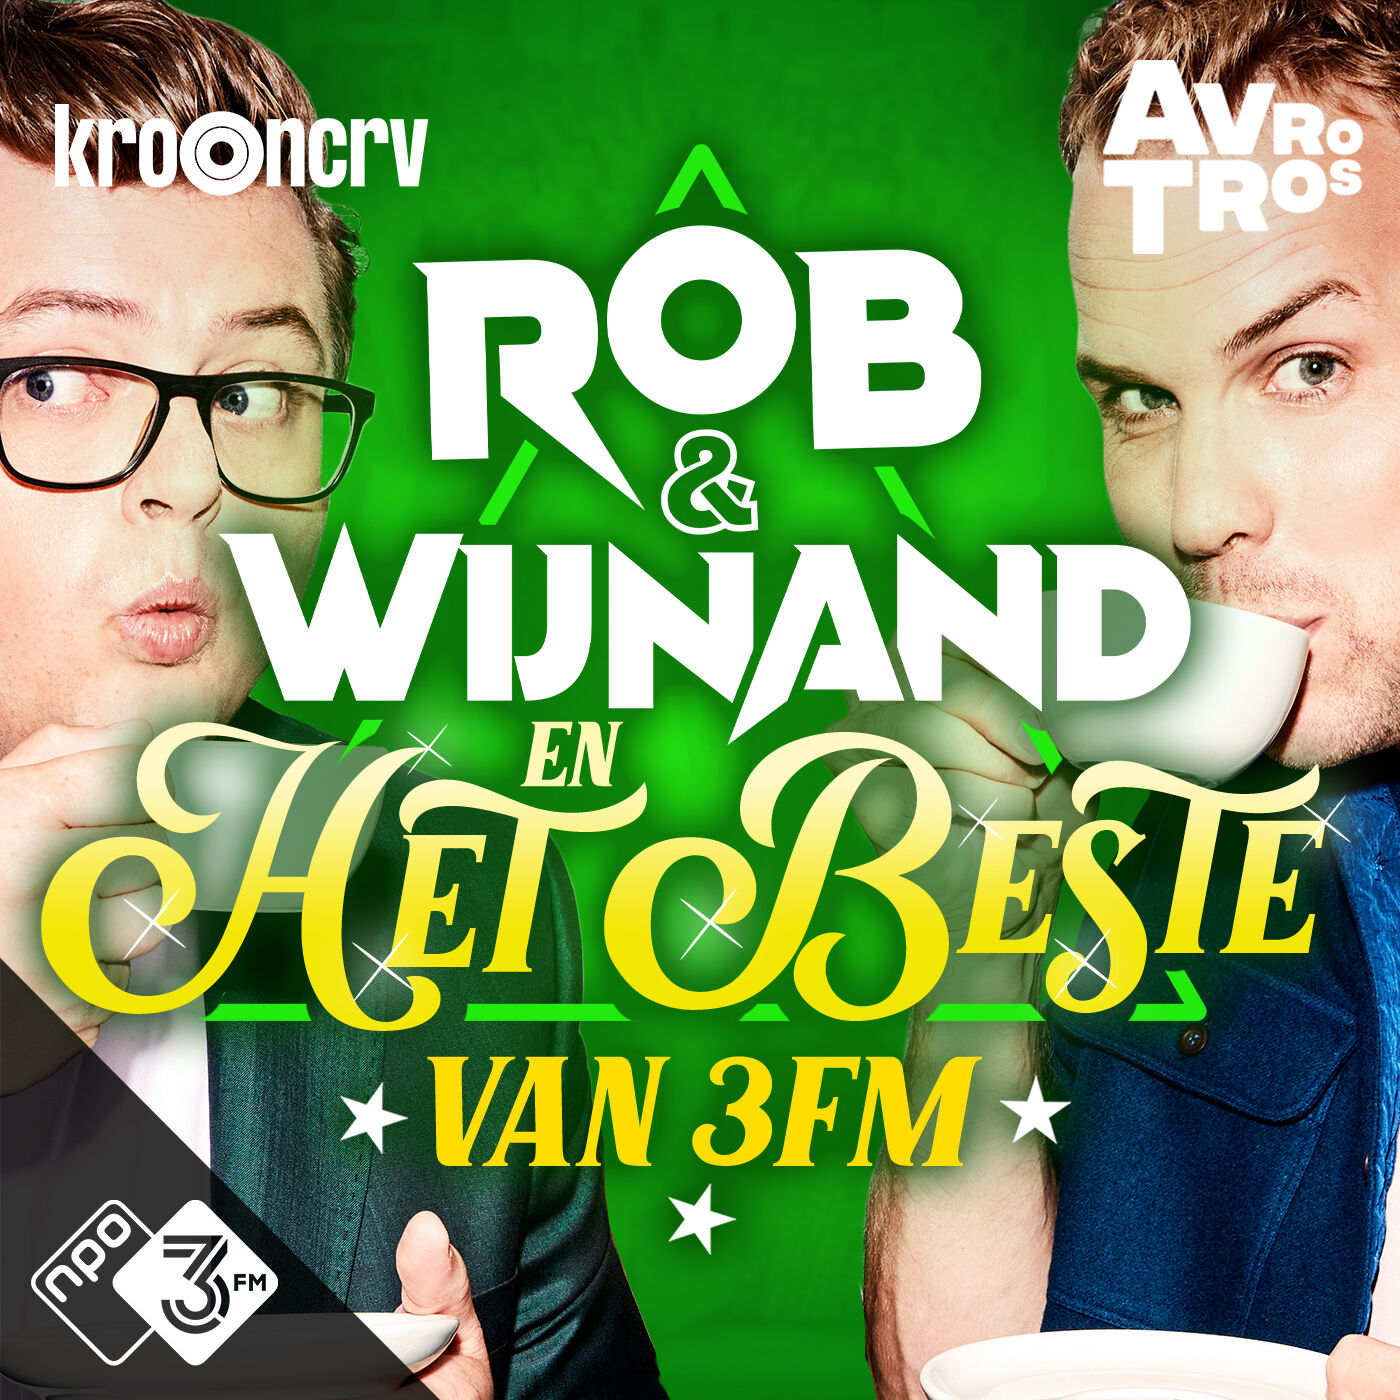 Rob & Wijnand en het beste van 3FM logo